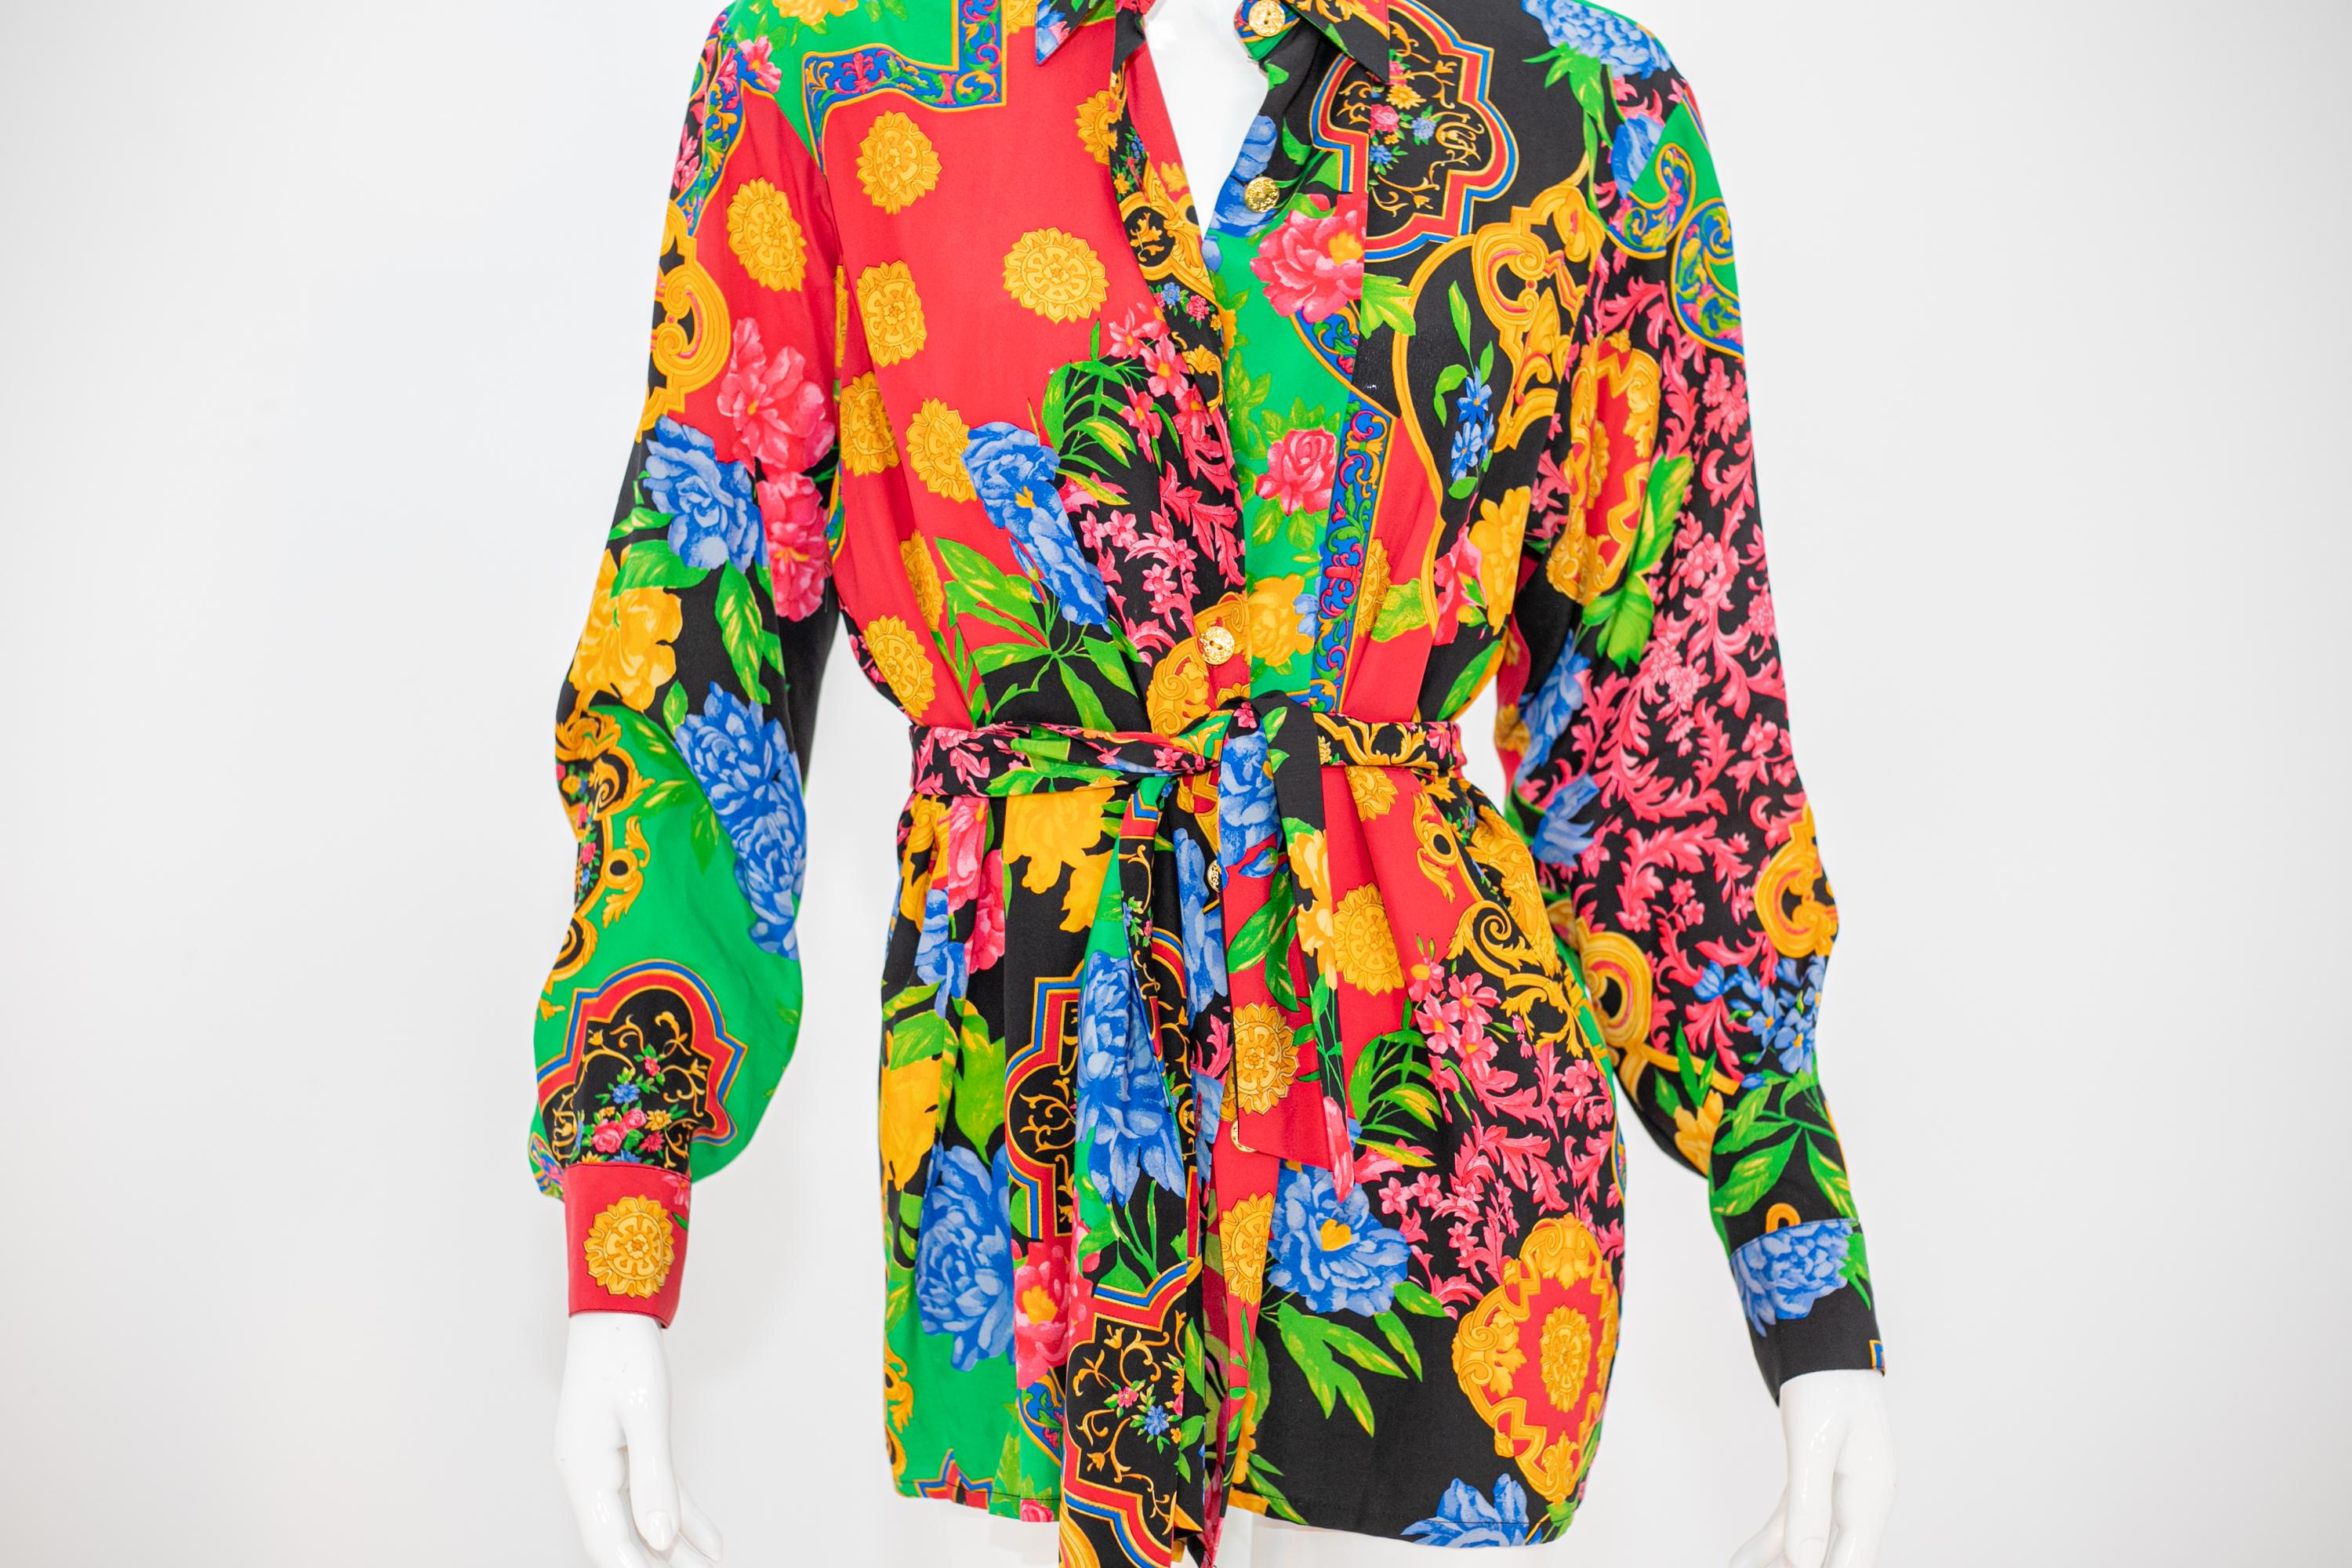 Extrous Vintage Colorful Little Dress 2